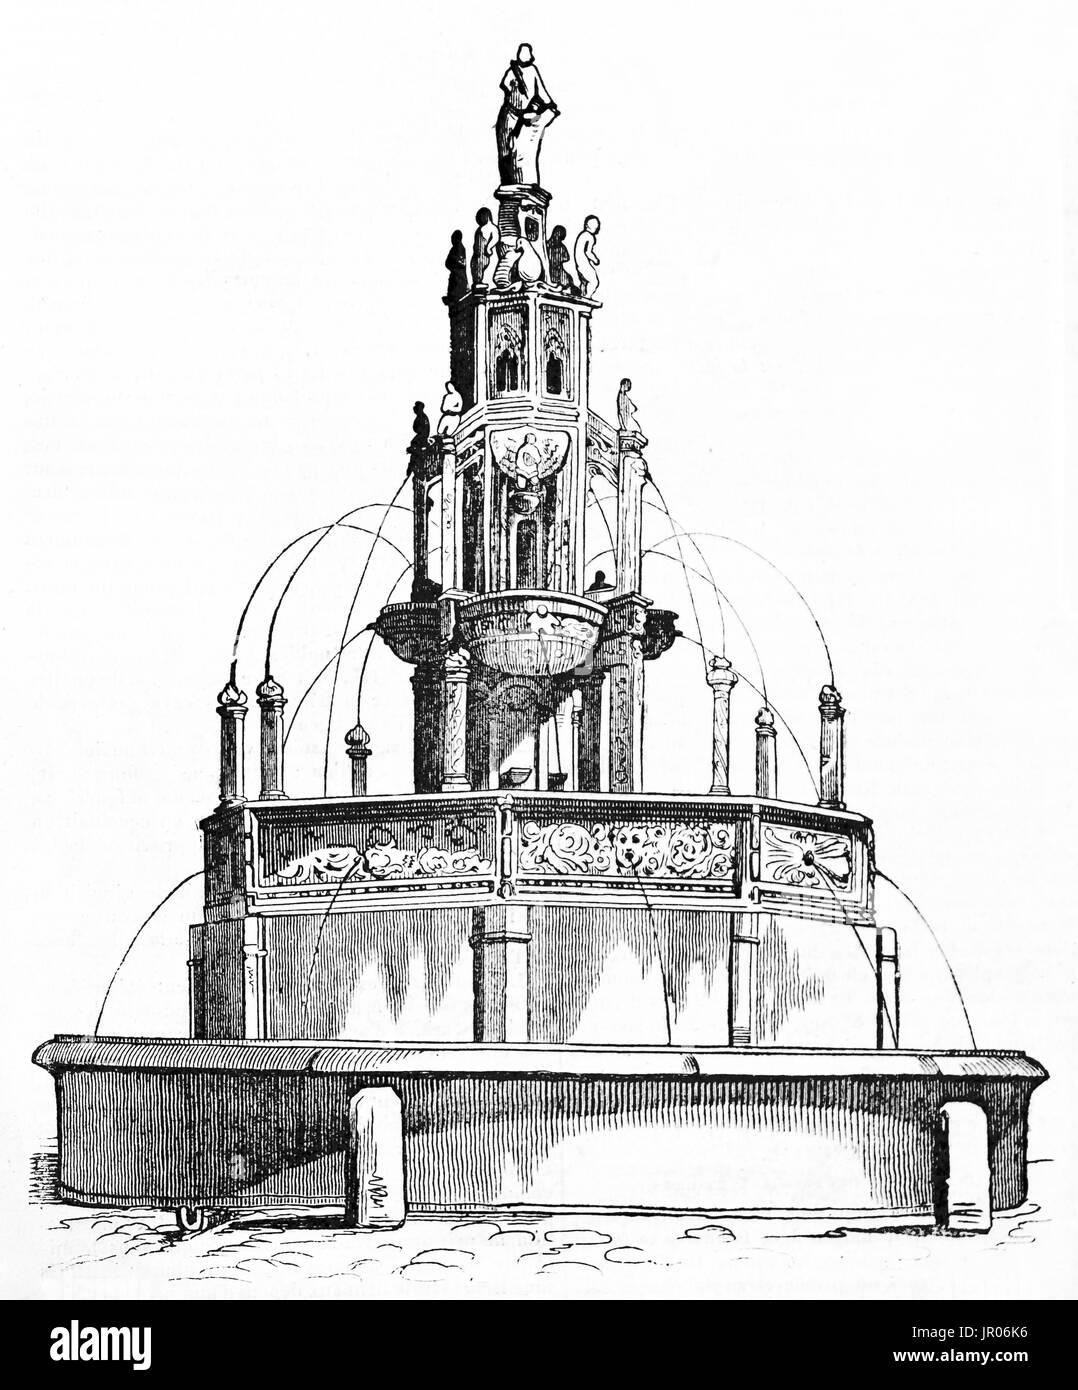 Vecchia illustrazione di Amboise fontana, Clermont-Ferrand, Francia (precedentemente situato in Place Delille). Dopo la scultura di Chapart, pubblicato il Magasin Foto Stock